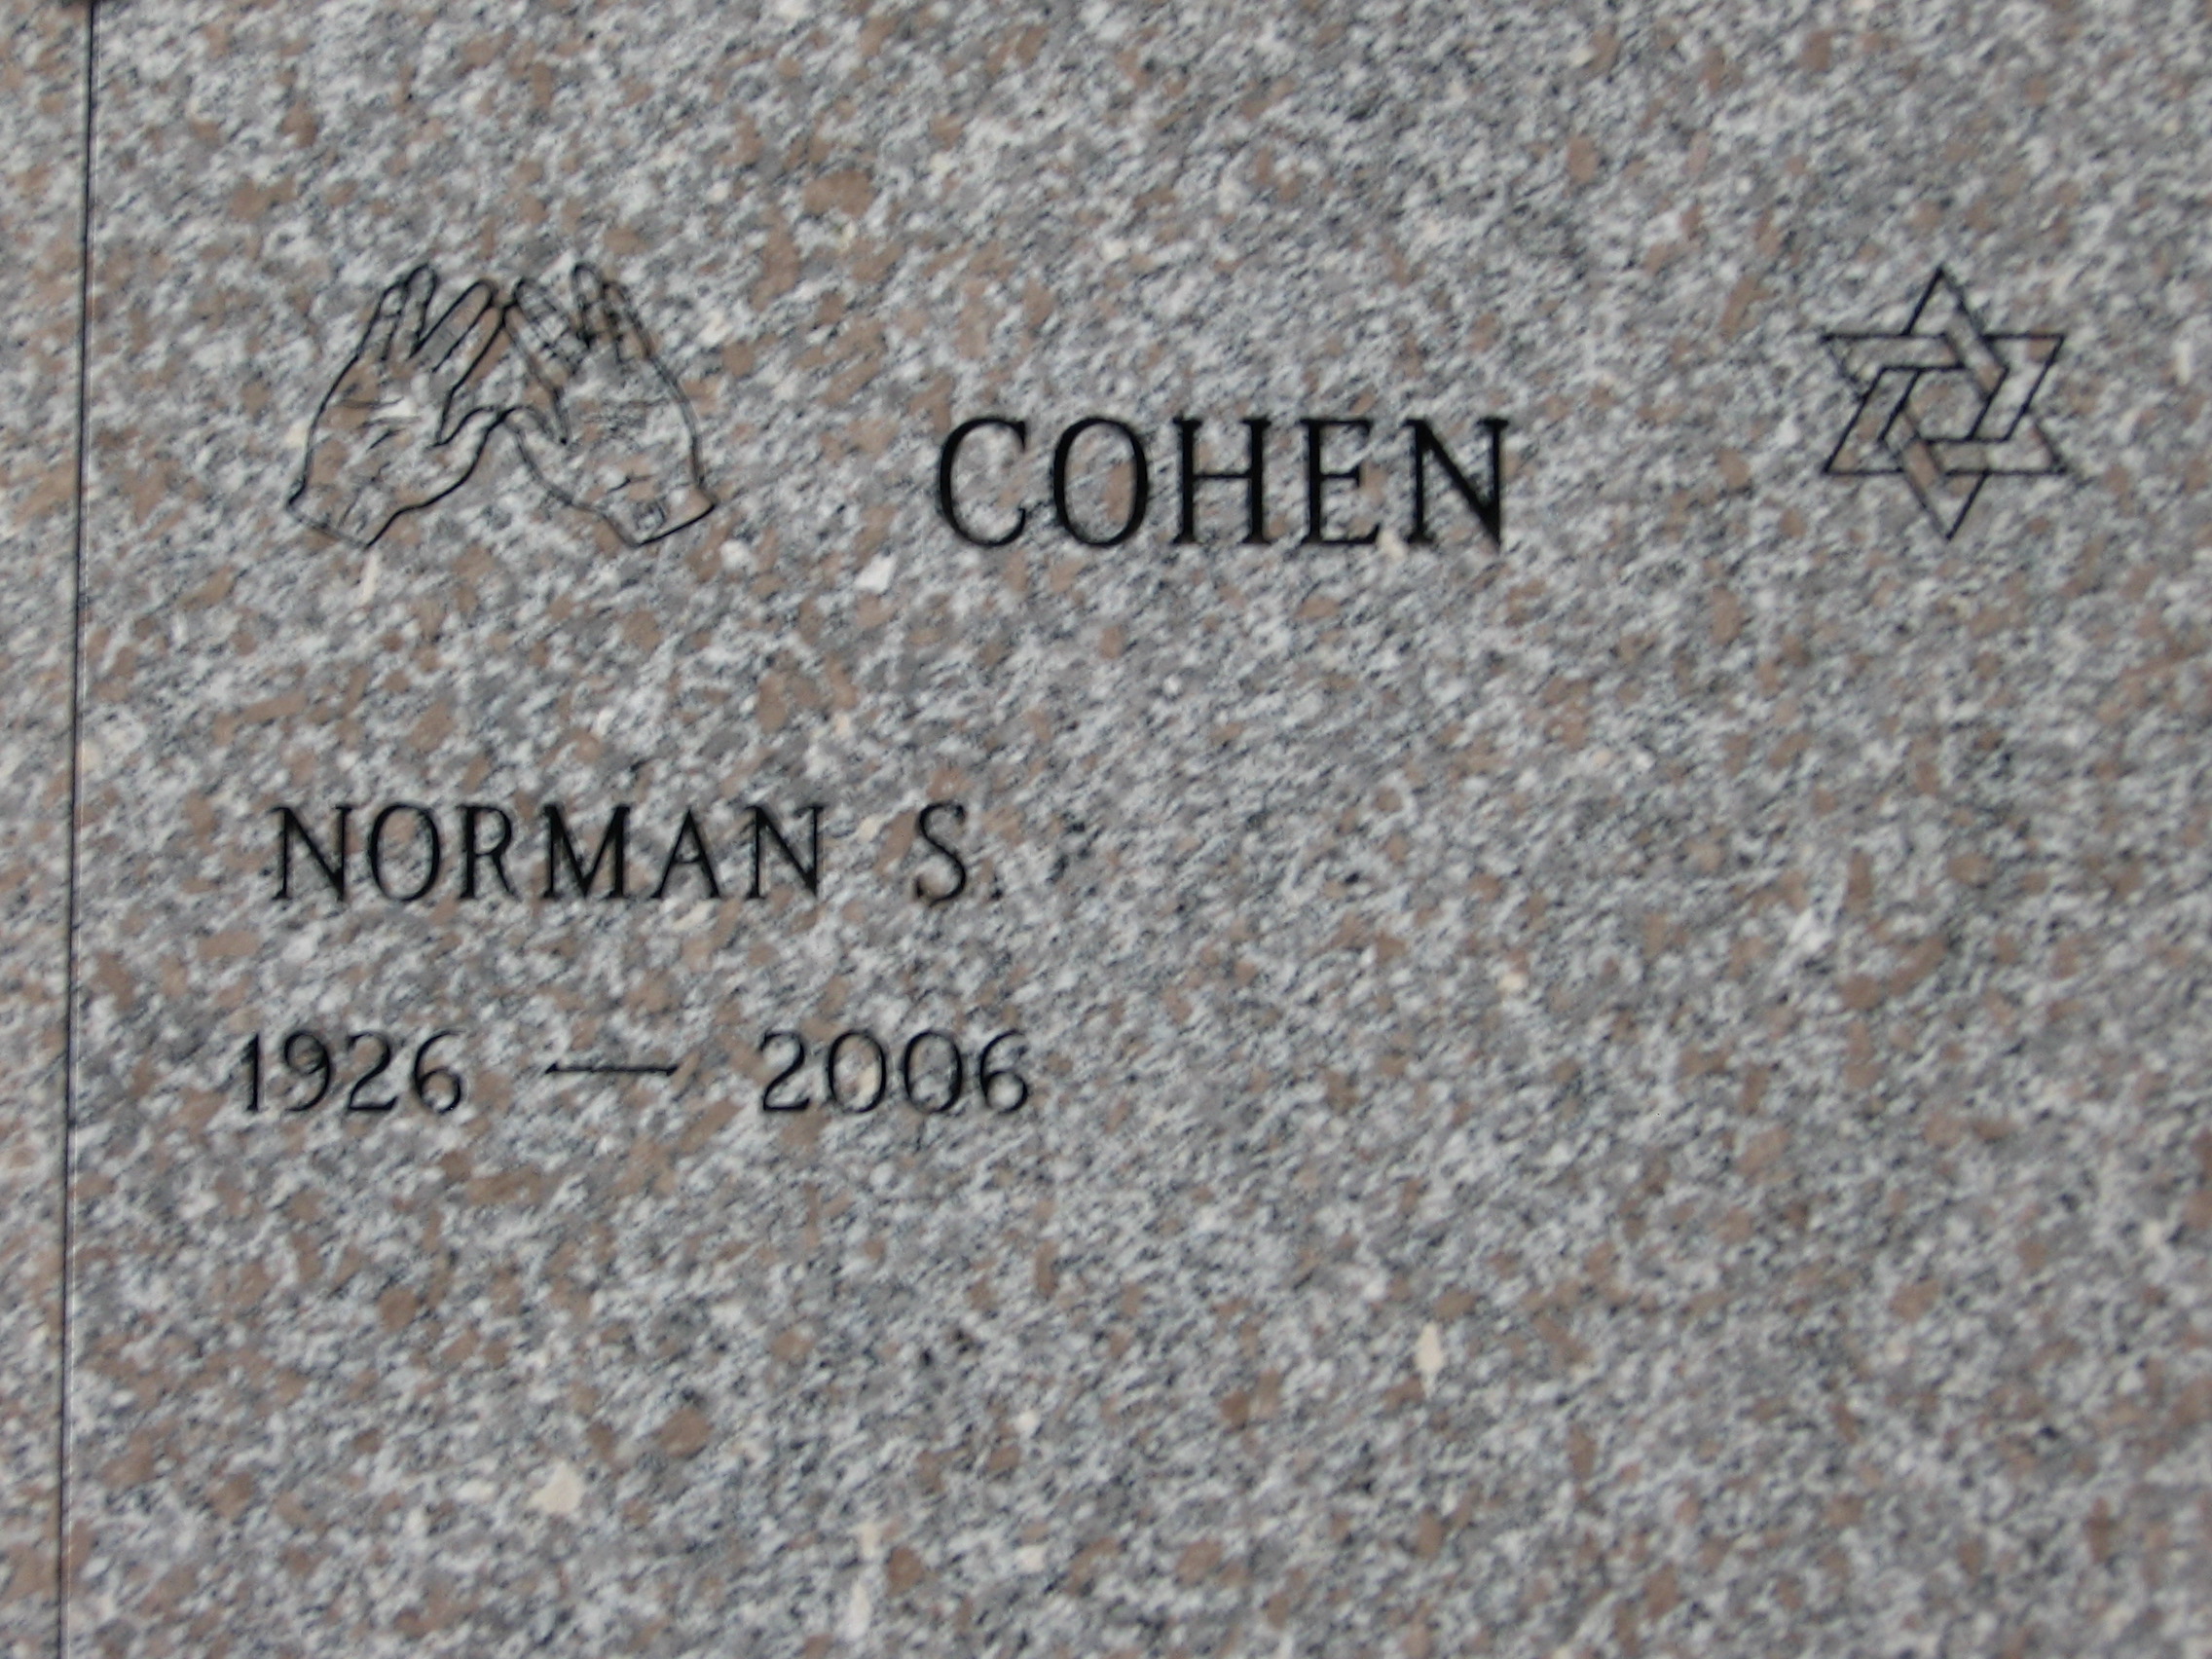 Norman S Cohen